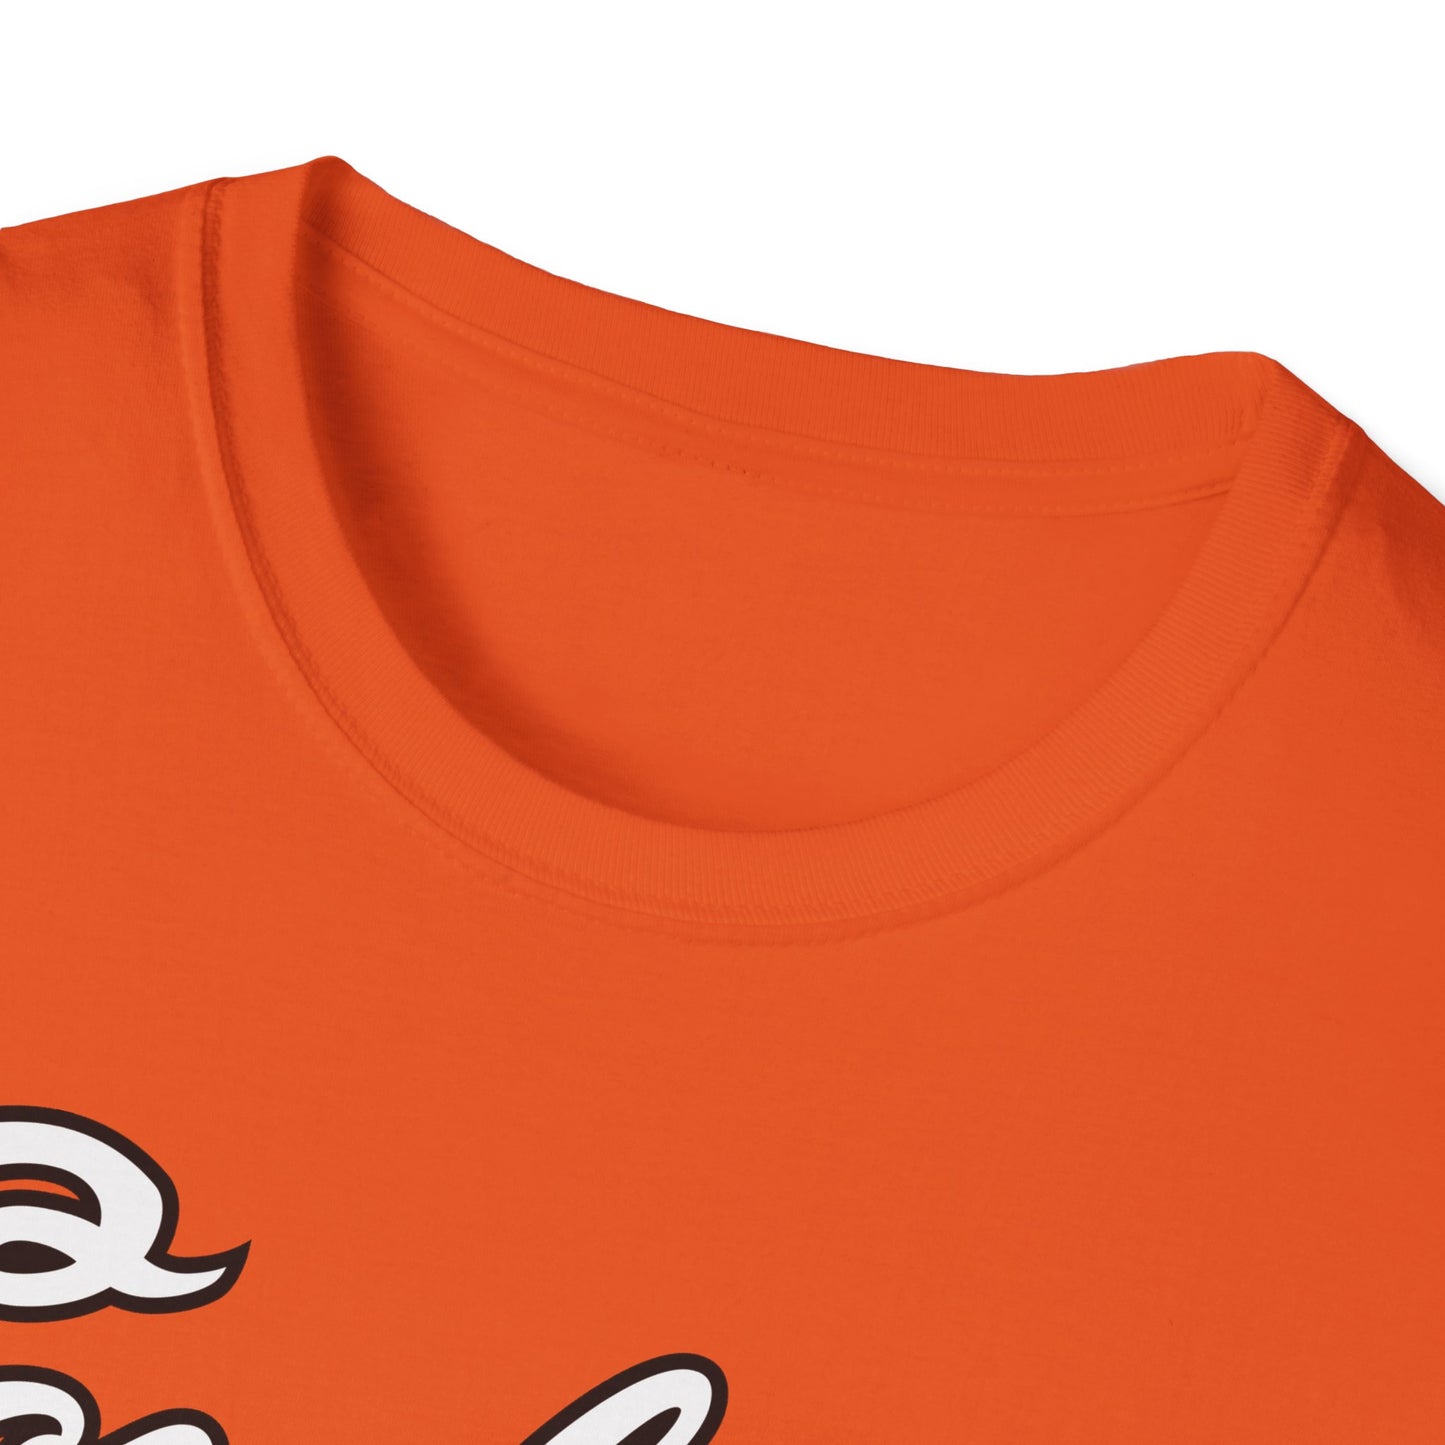 Hilton Marsh #65 Orange Cursive Cowboys T-Shirt